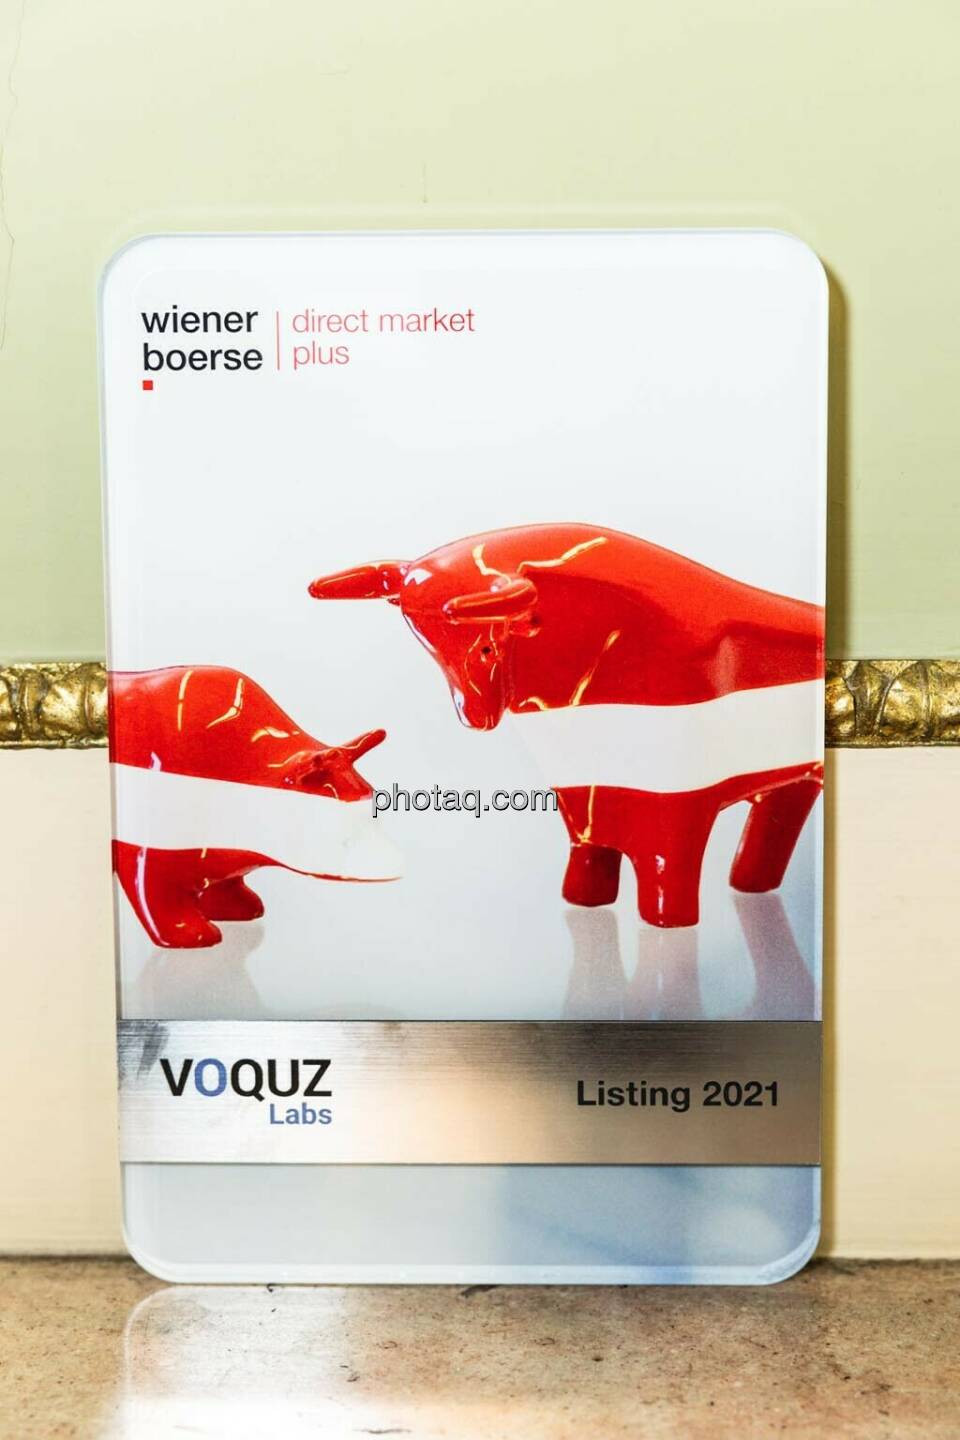 Wiener Börse Voquz Listing 2021